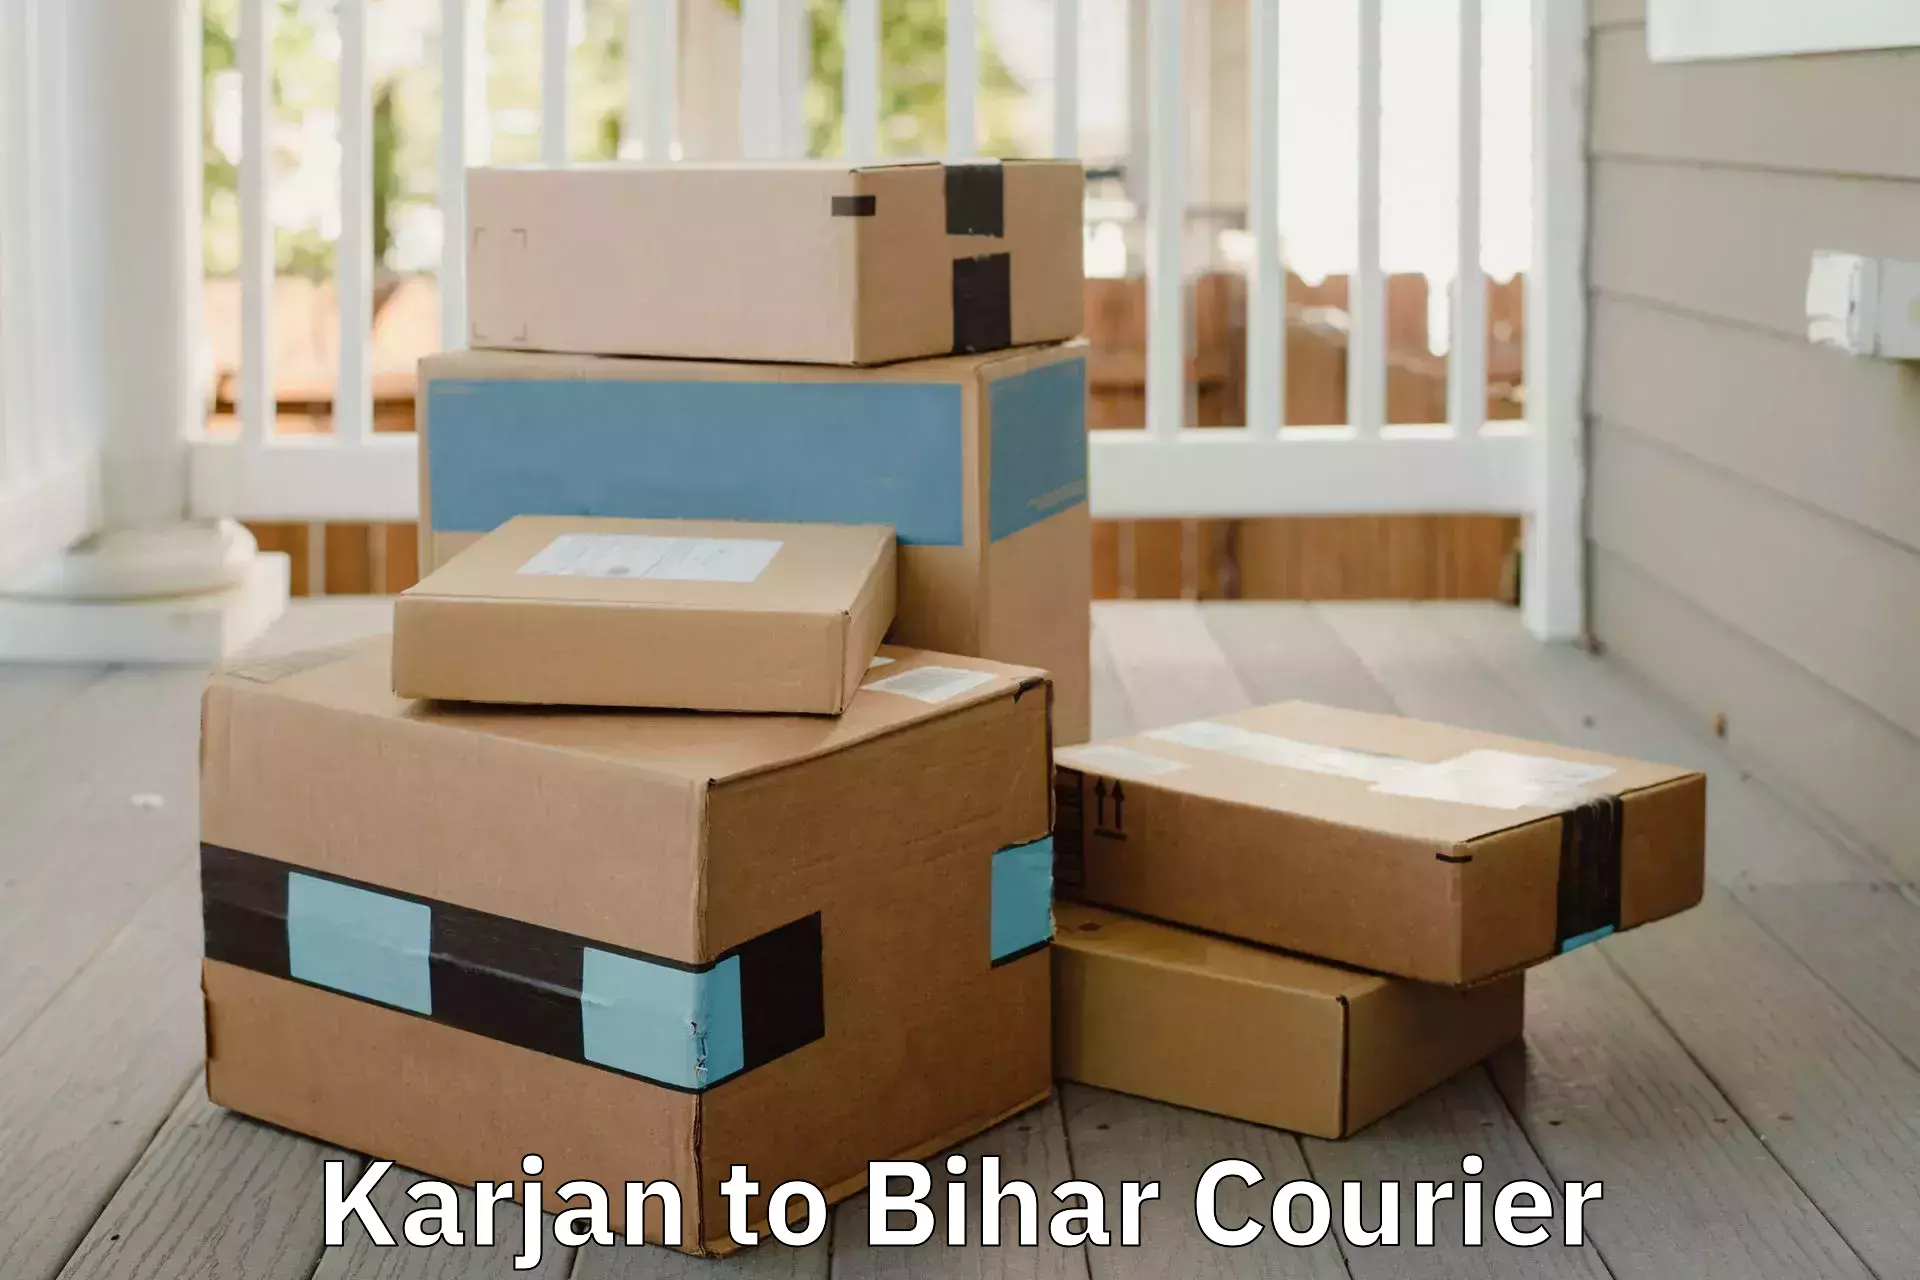 Furniture handling services in Karjan to Bihar